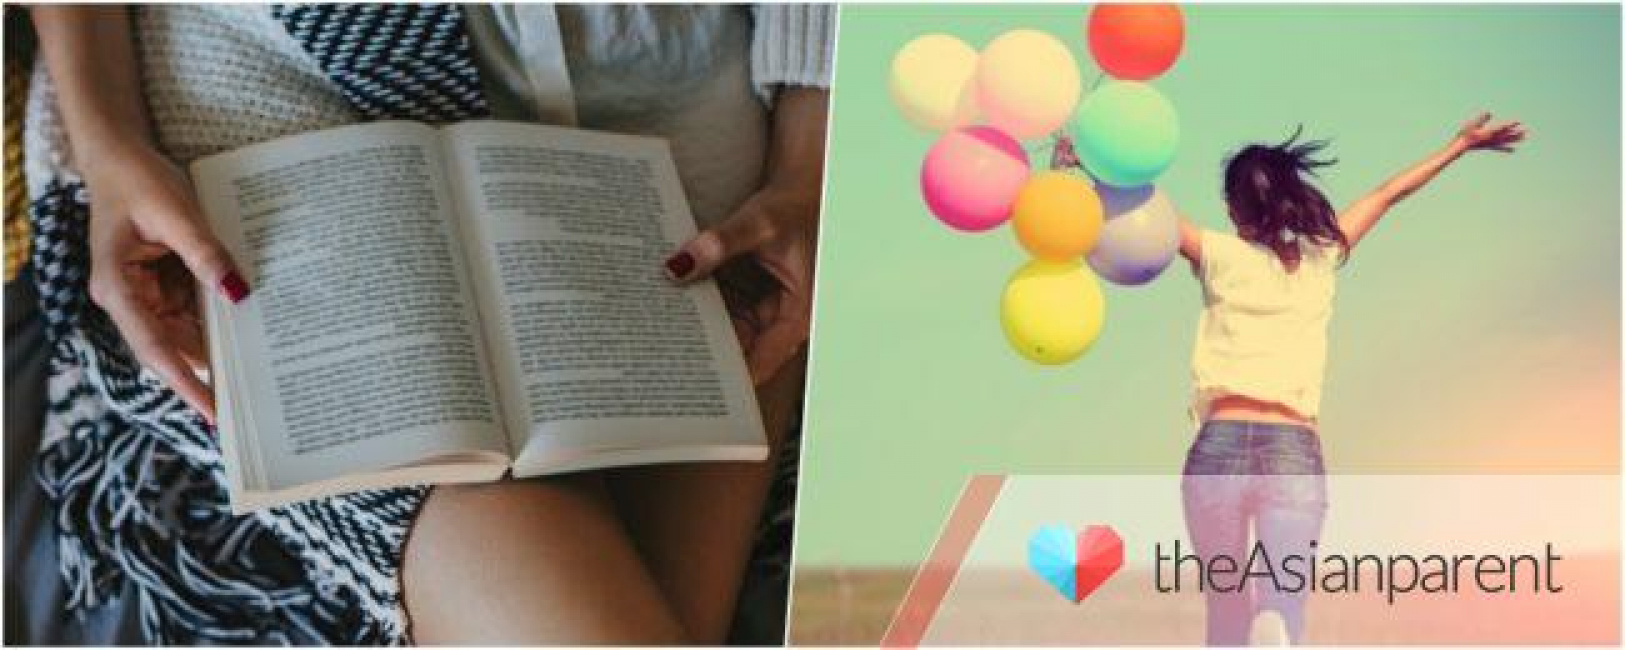 8 quyển sách giúp bạn sống tốt hơn sau khi chia tay